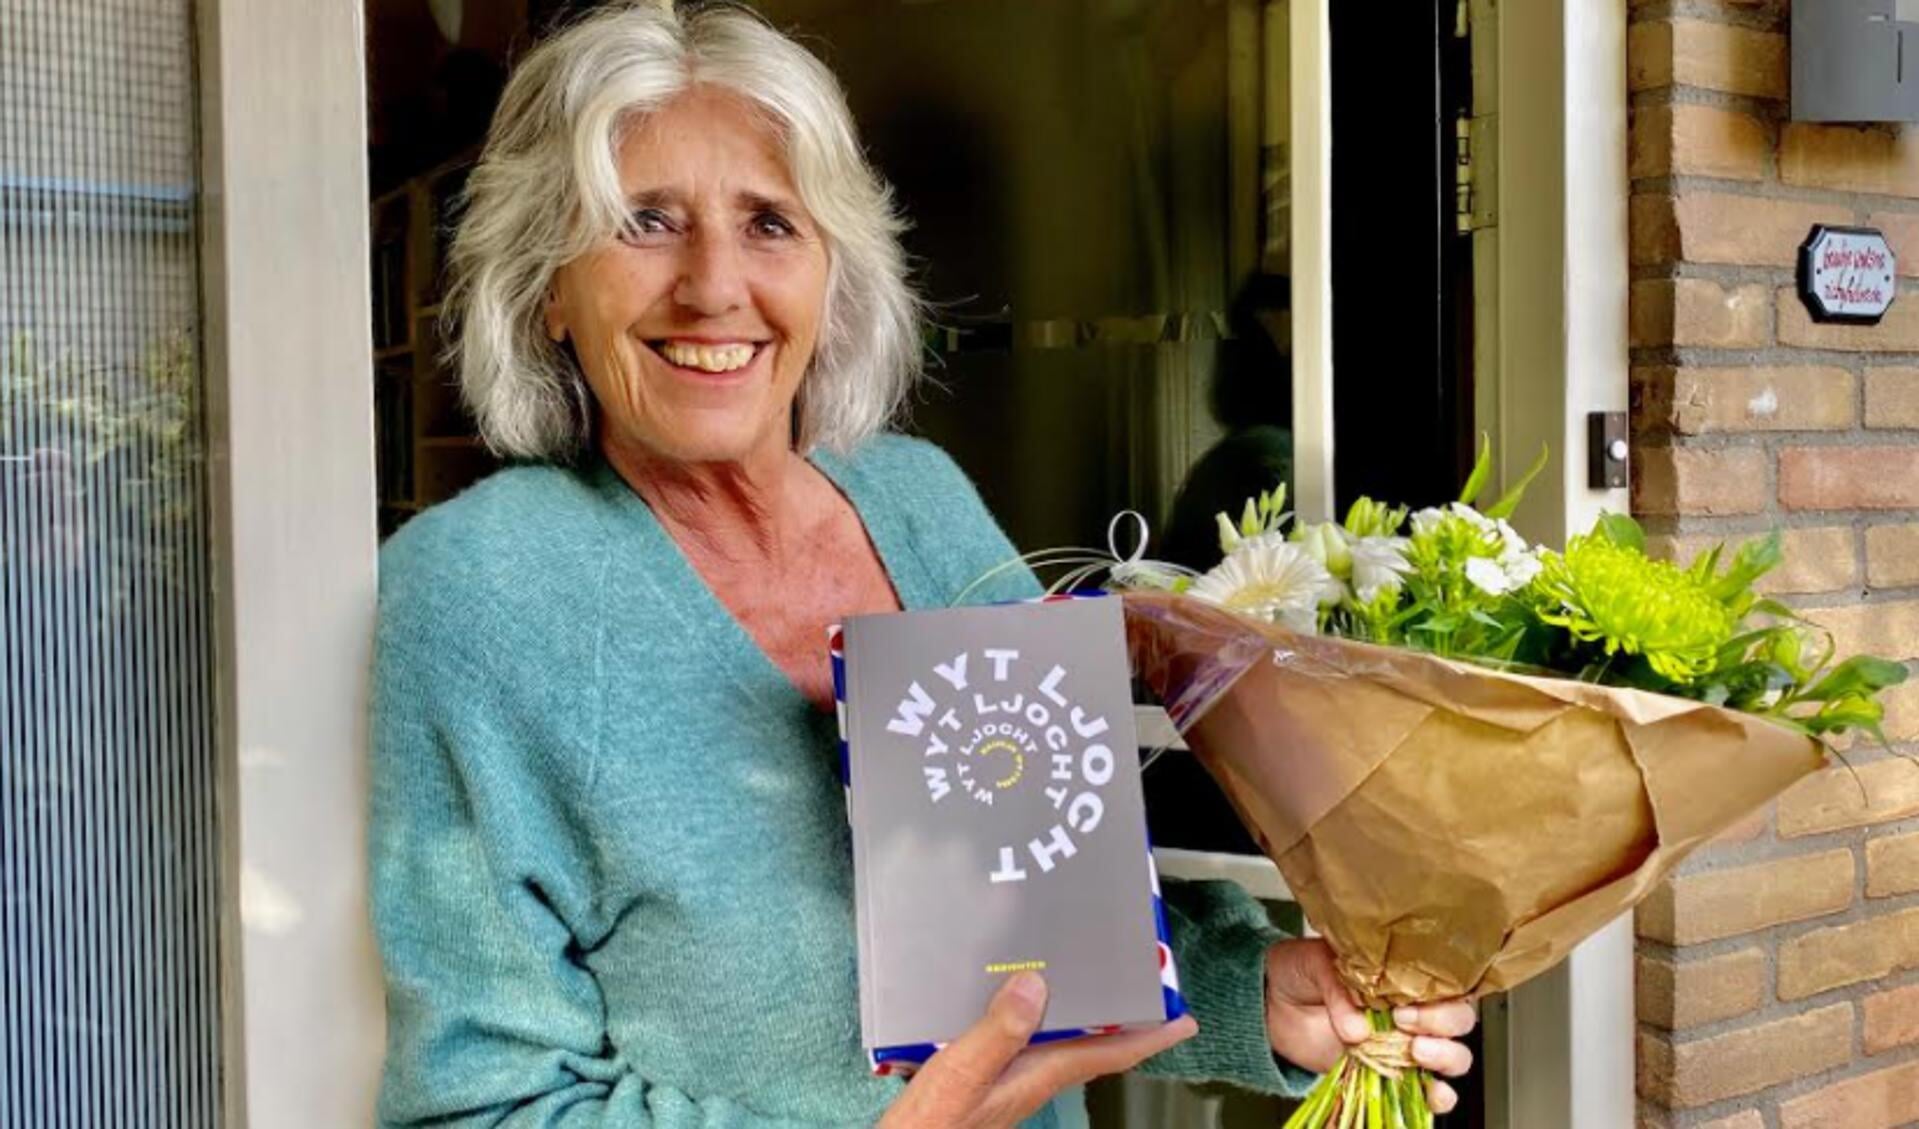 Baukje Wytsma ontvangst een bos bloemen en het eerste exemplaar van haar nieuwste dichtbundel, uit handen van de directeur van de AFÛK.